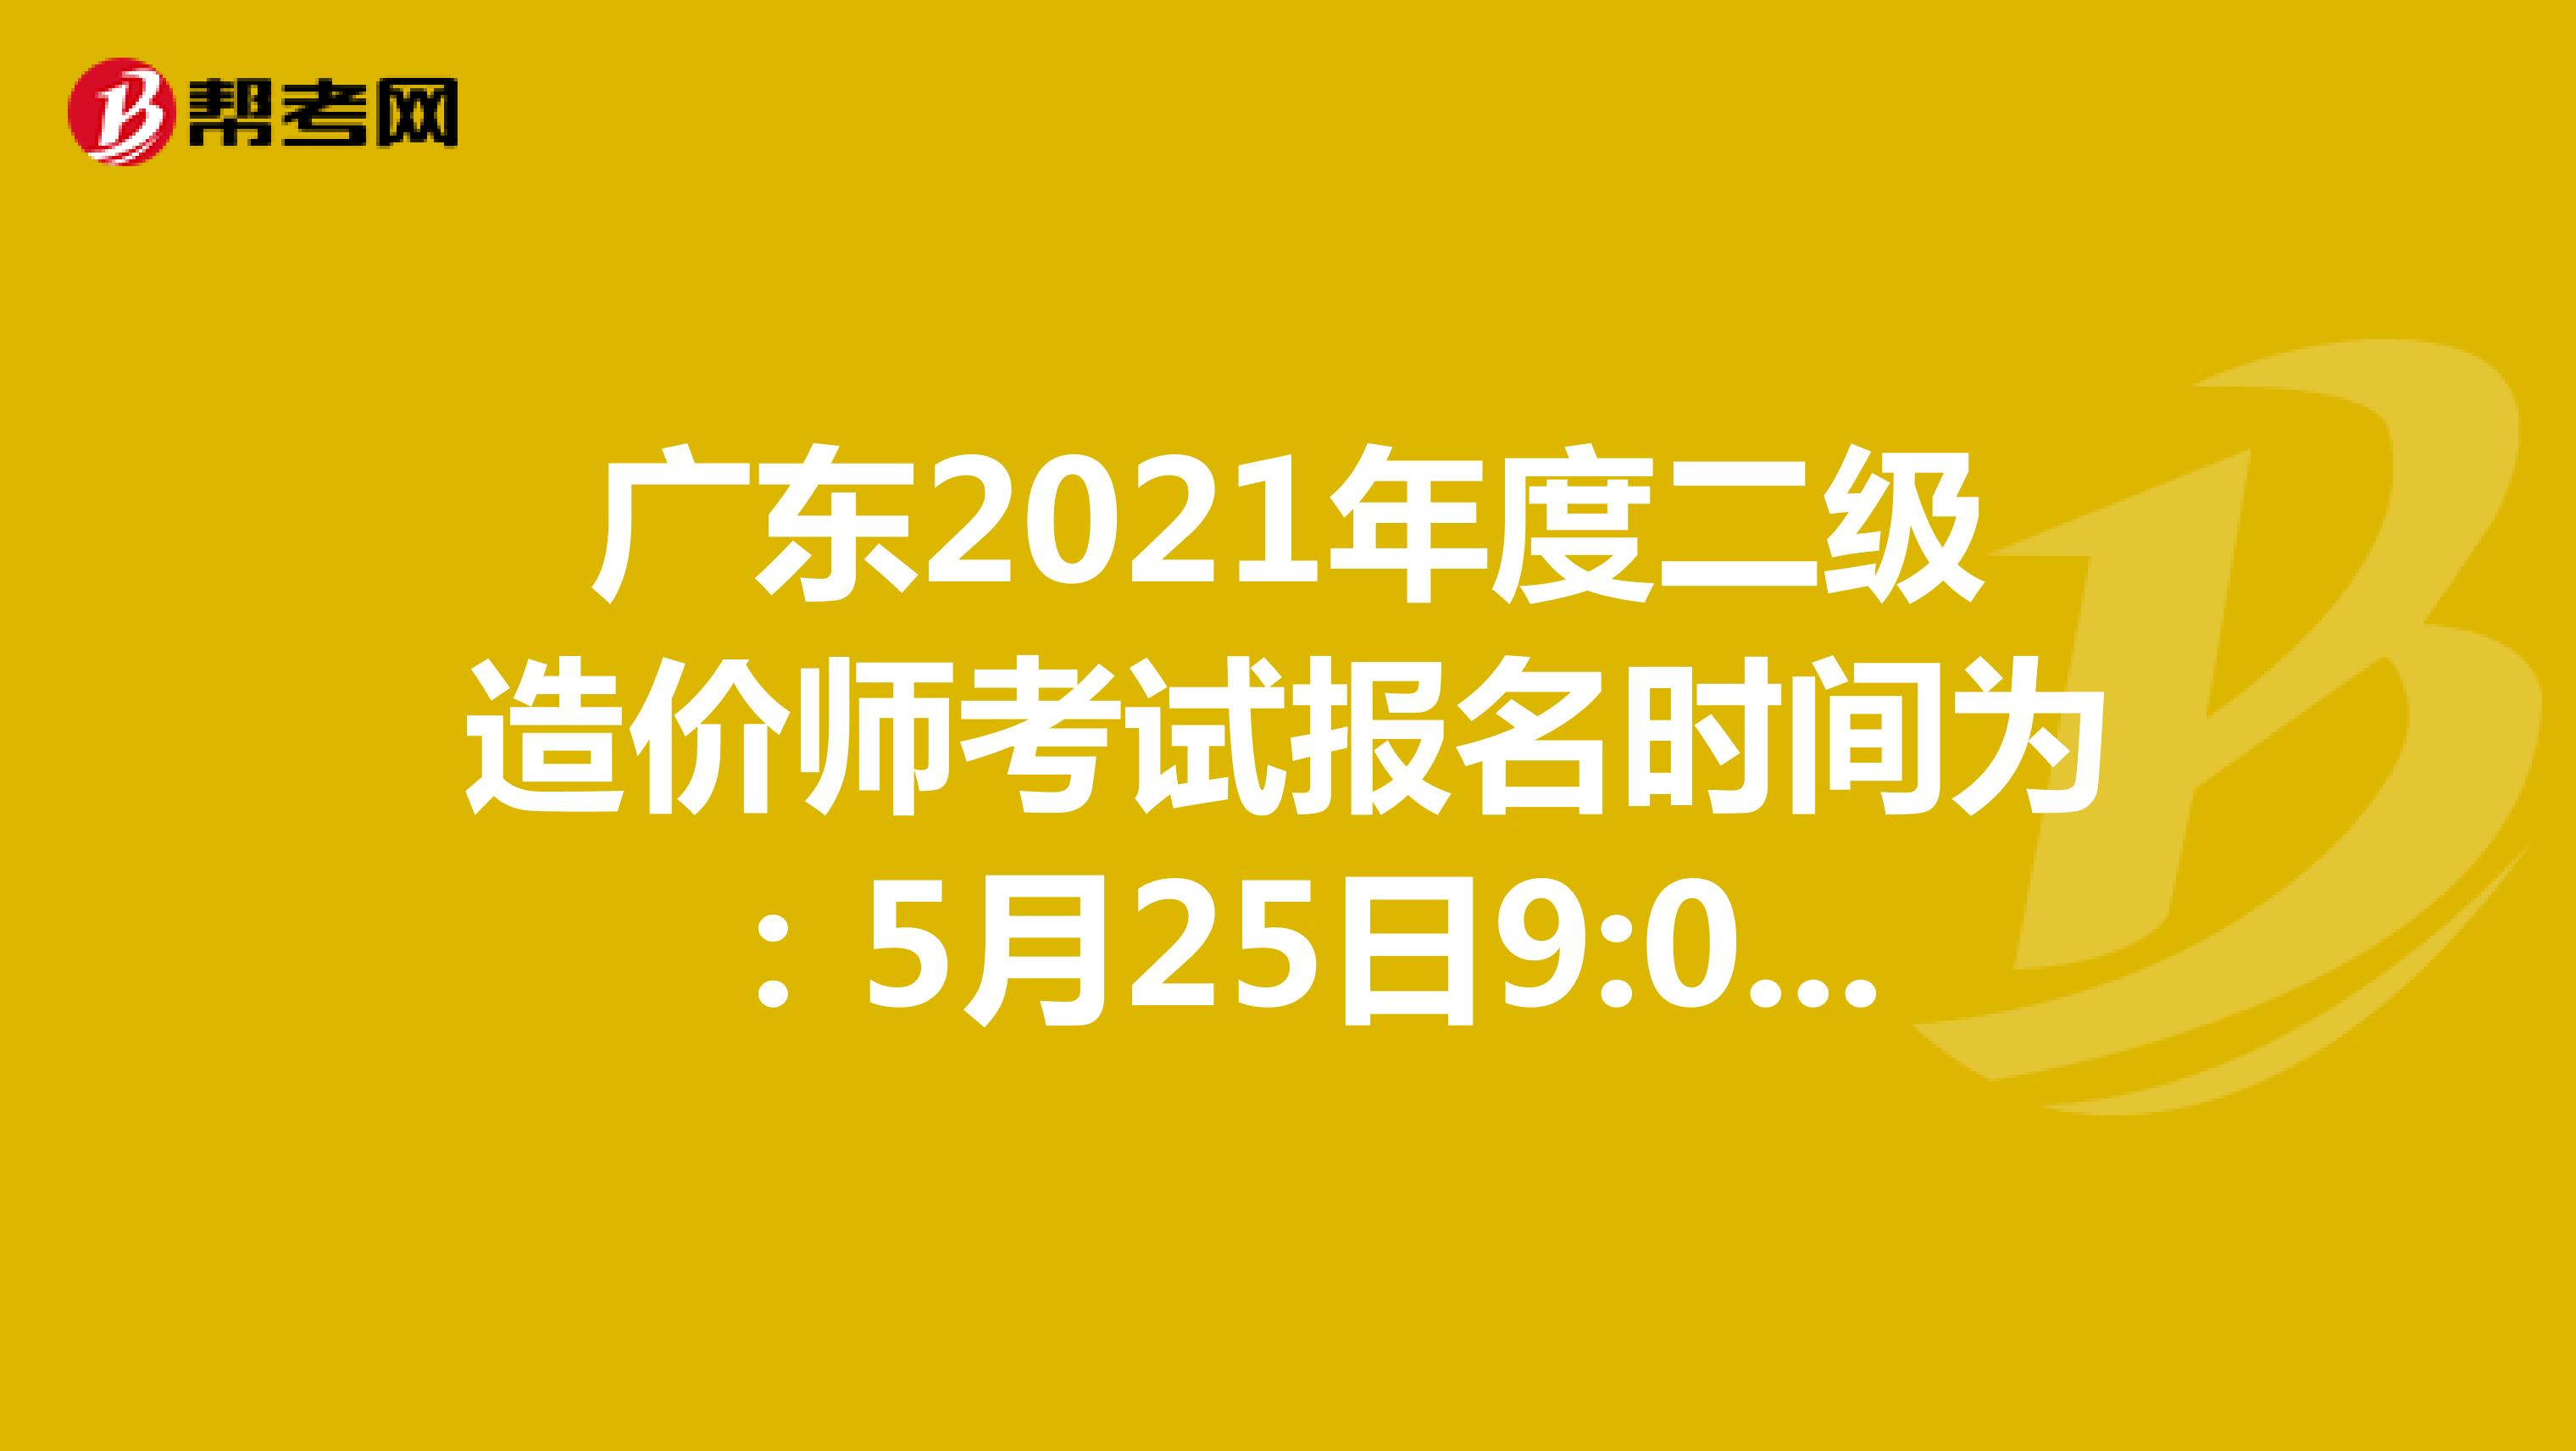 广东2021年度二级造价师考试报名时间为：5月25日9:00-6月3日17:00